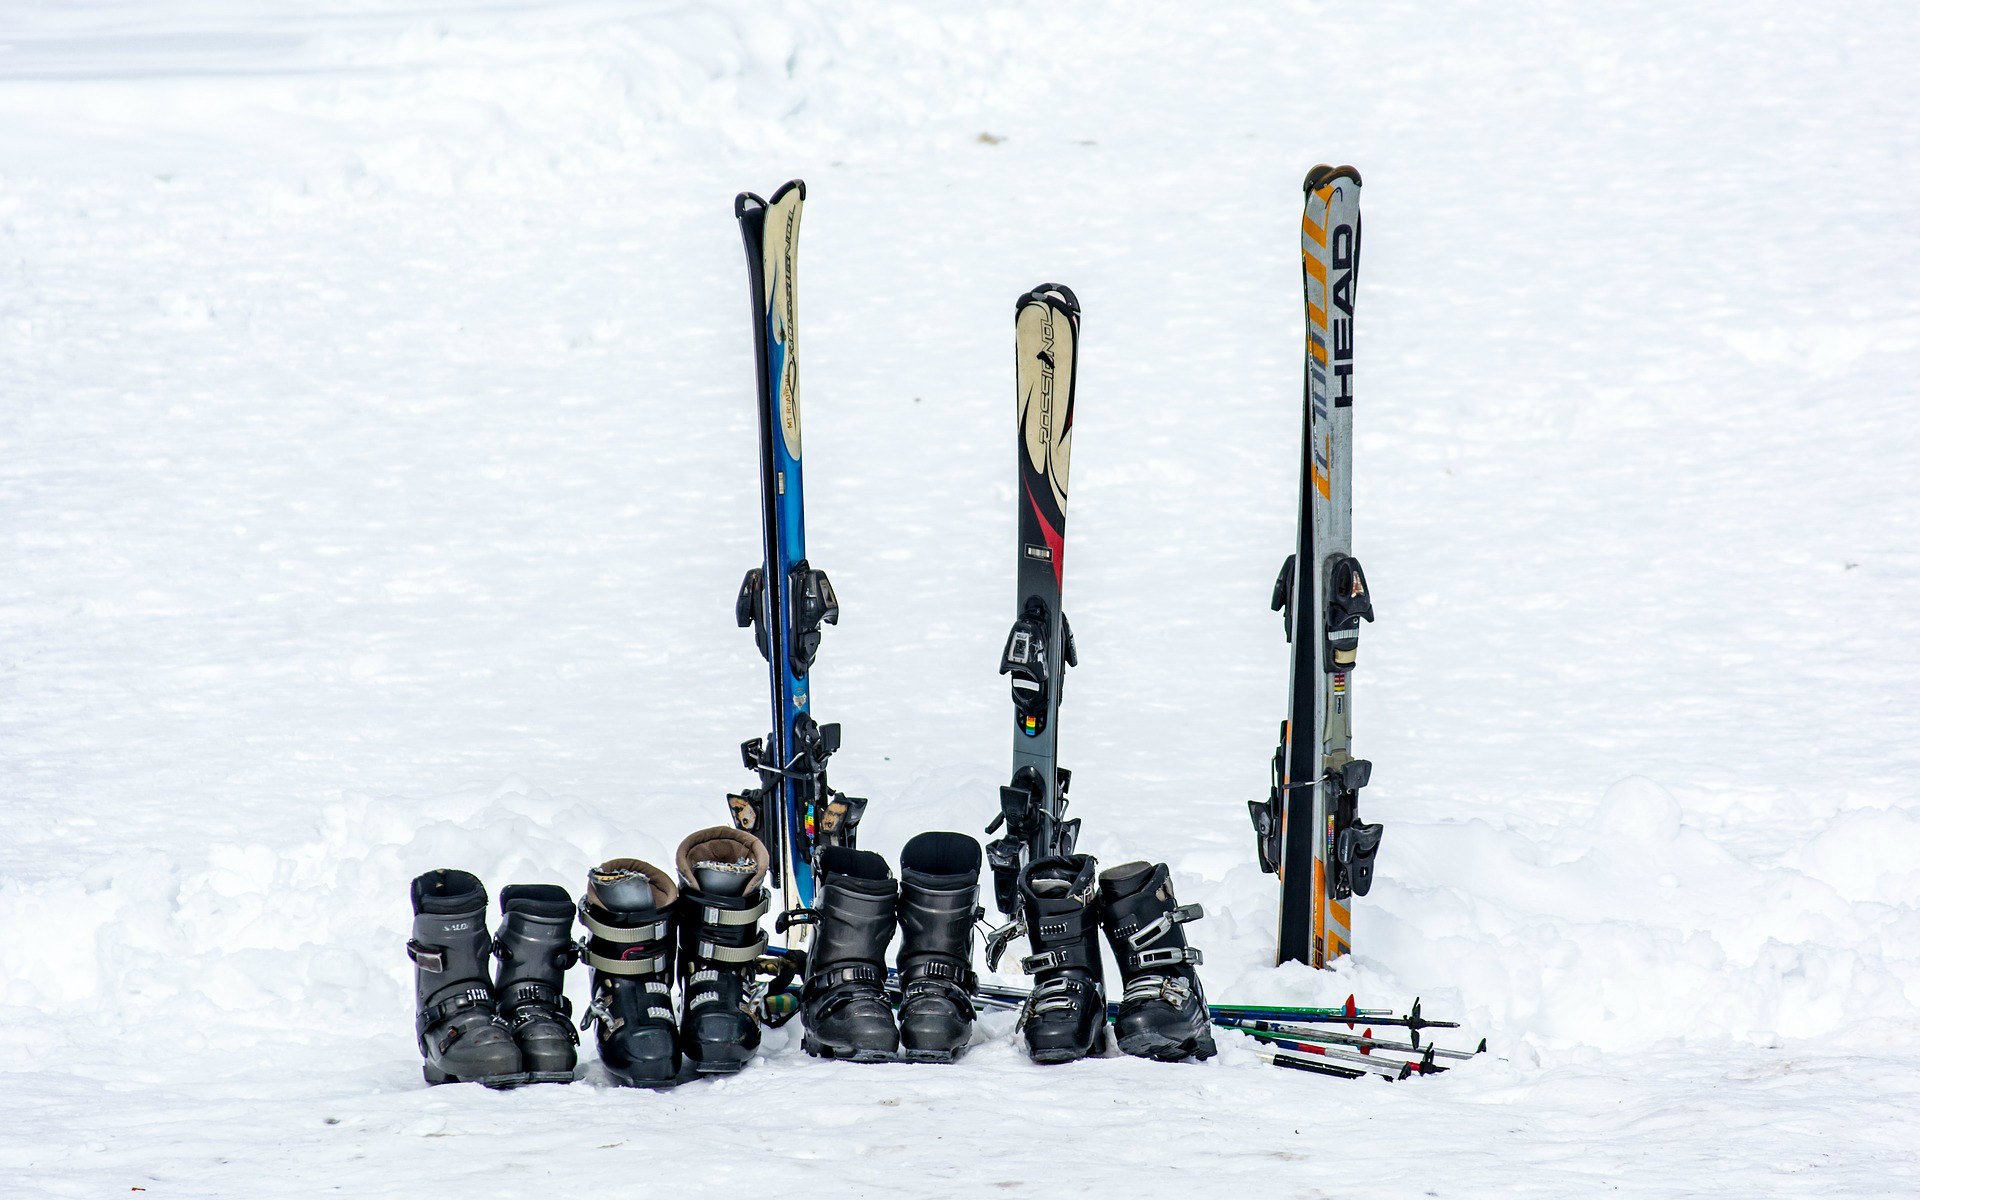 Blik op ski’s, skischoenen en skistokken in de sneeuw.